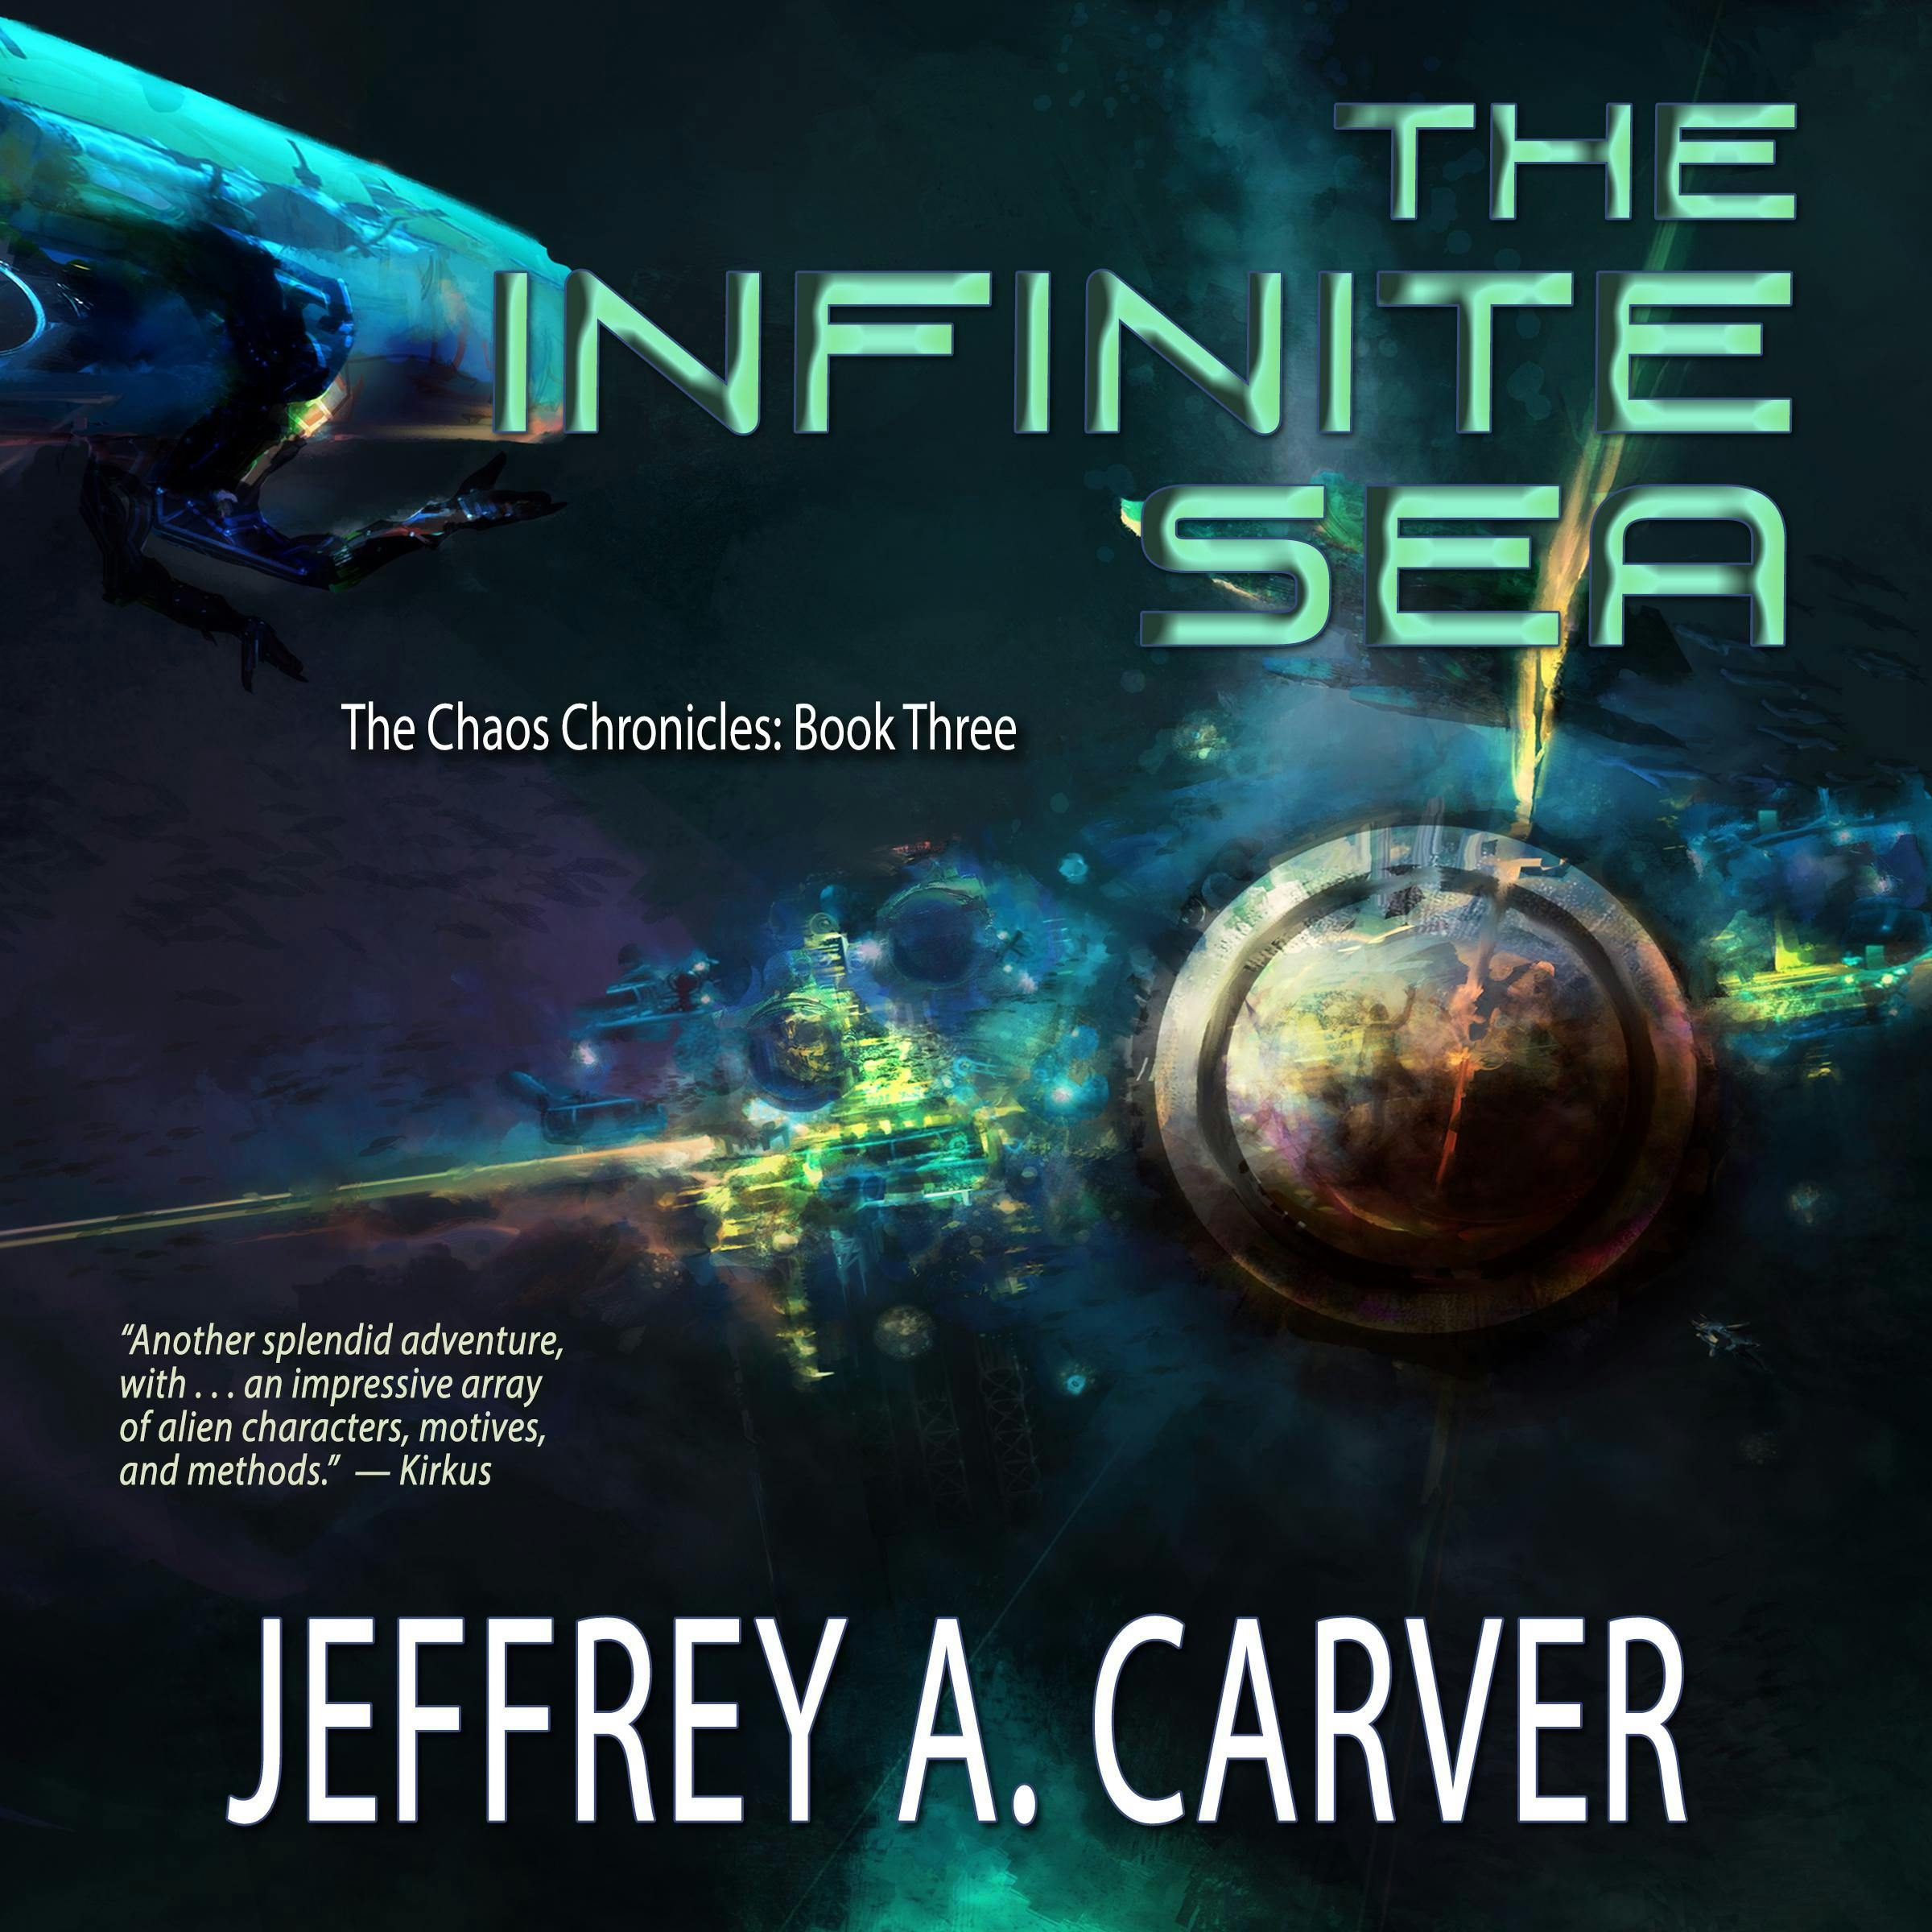 The Infinite Sea - Jeffrey A. Carver